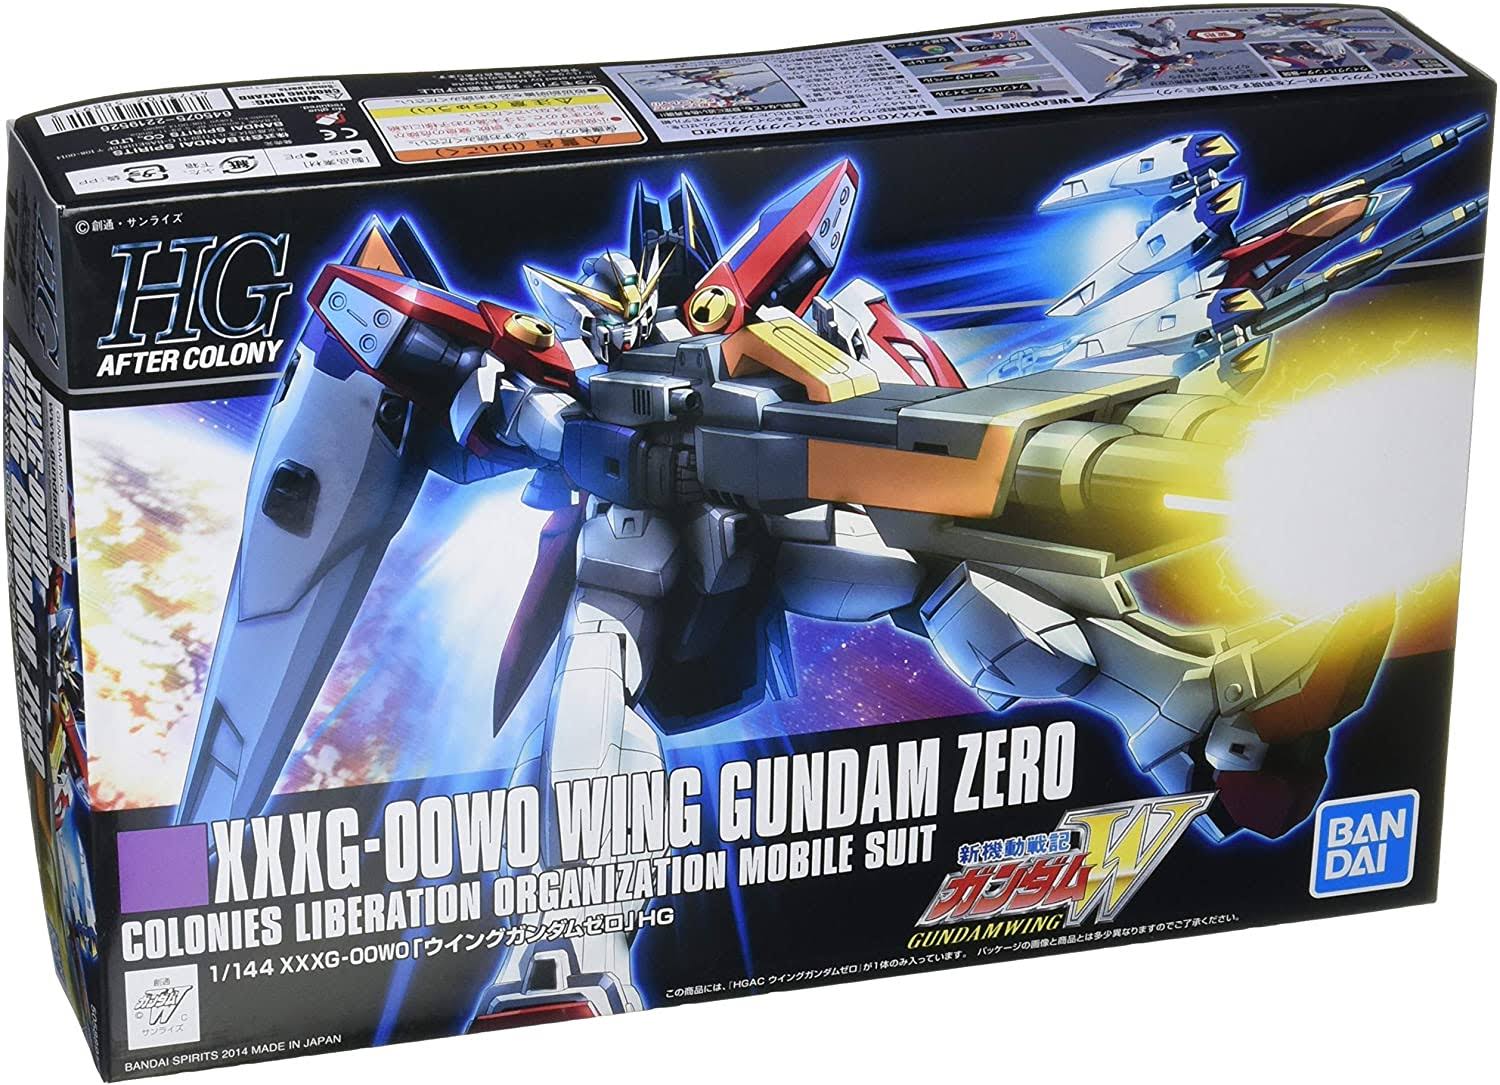 Bandai Hgac Gundam Wing Model Kit - 1/144 Scale